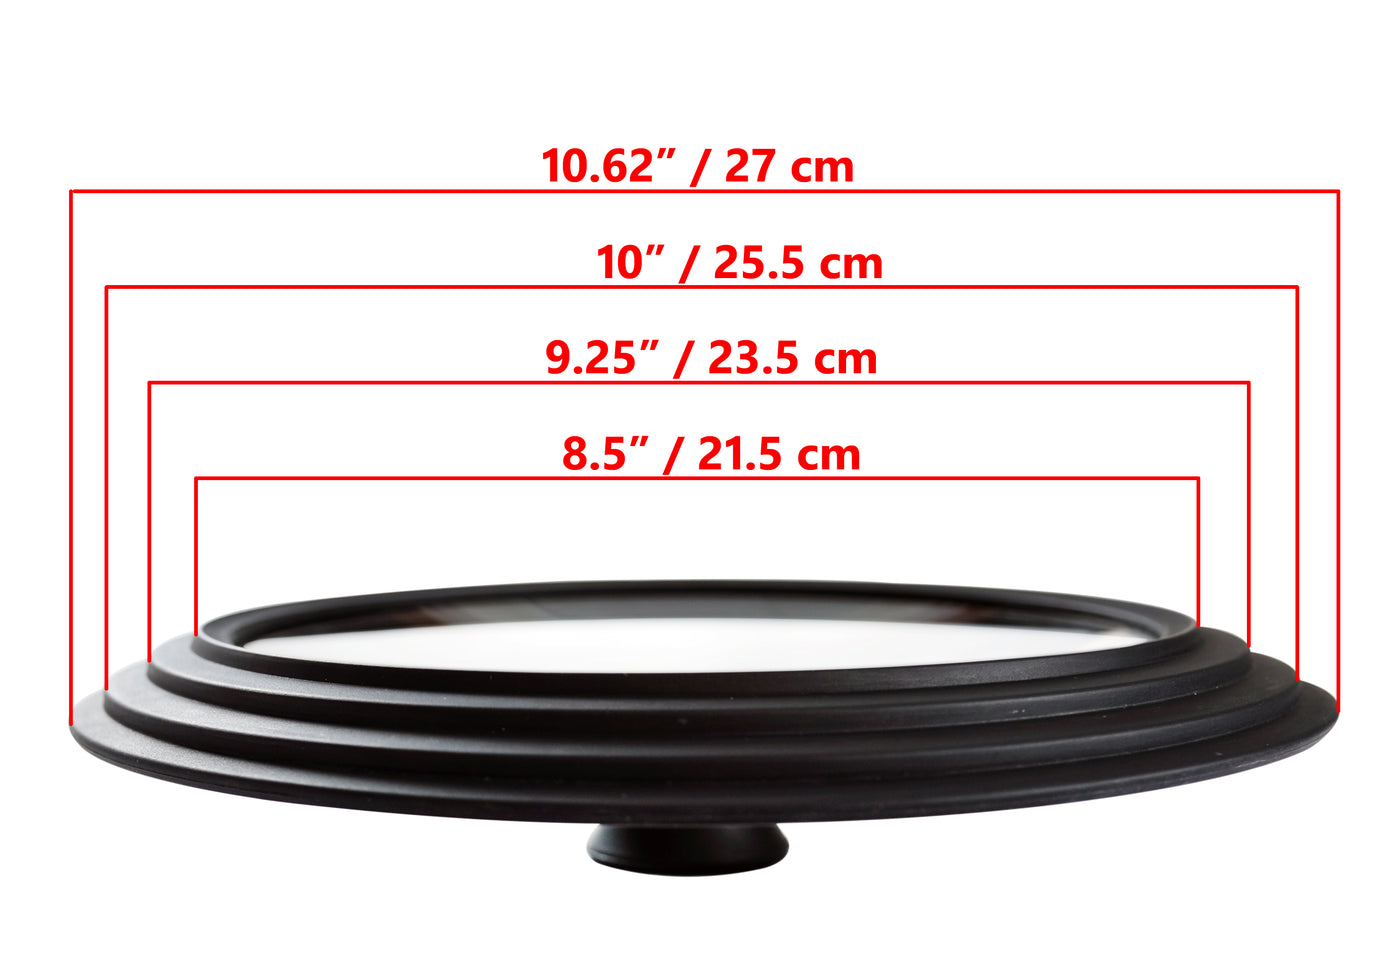 2-PACK - Glasslokk Universal - Multistørrelse for gryter og panner, svart